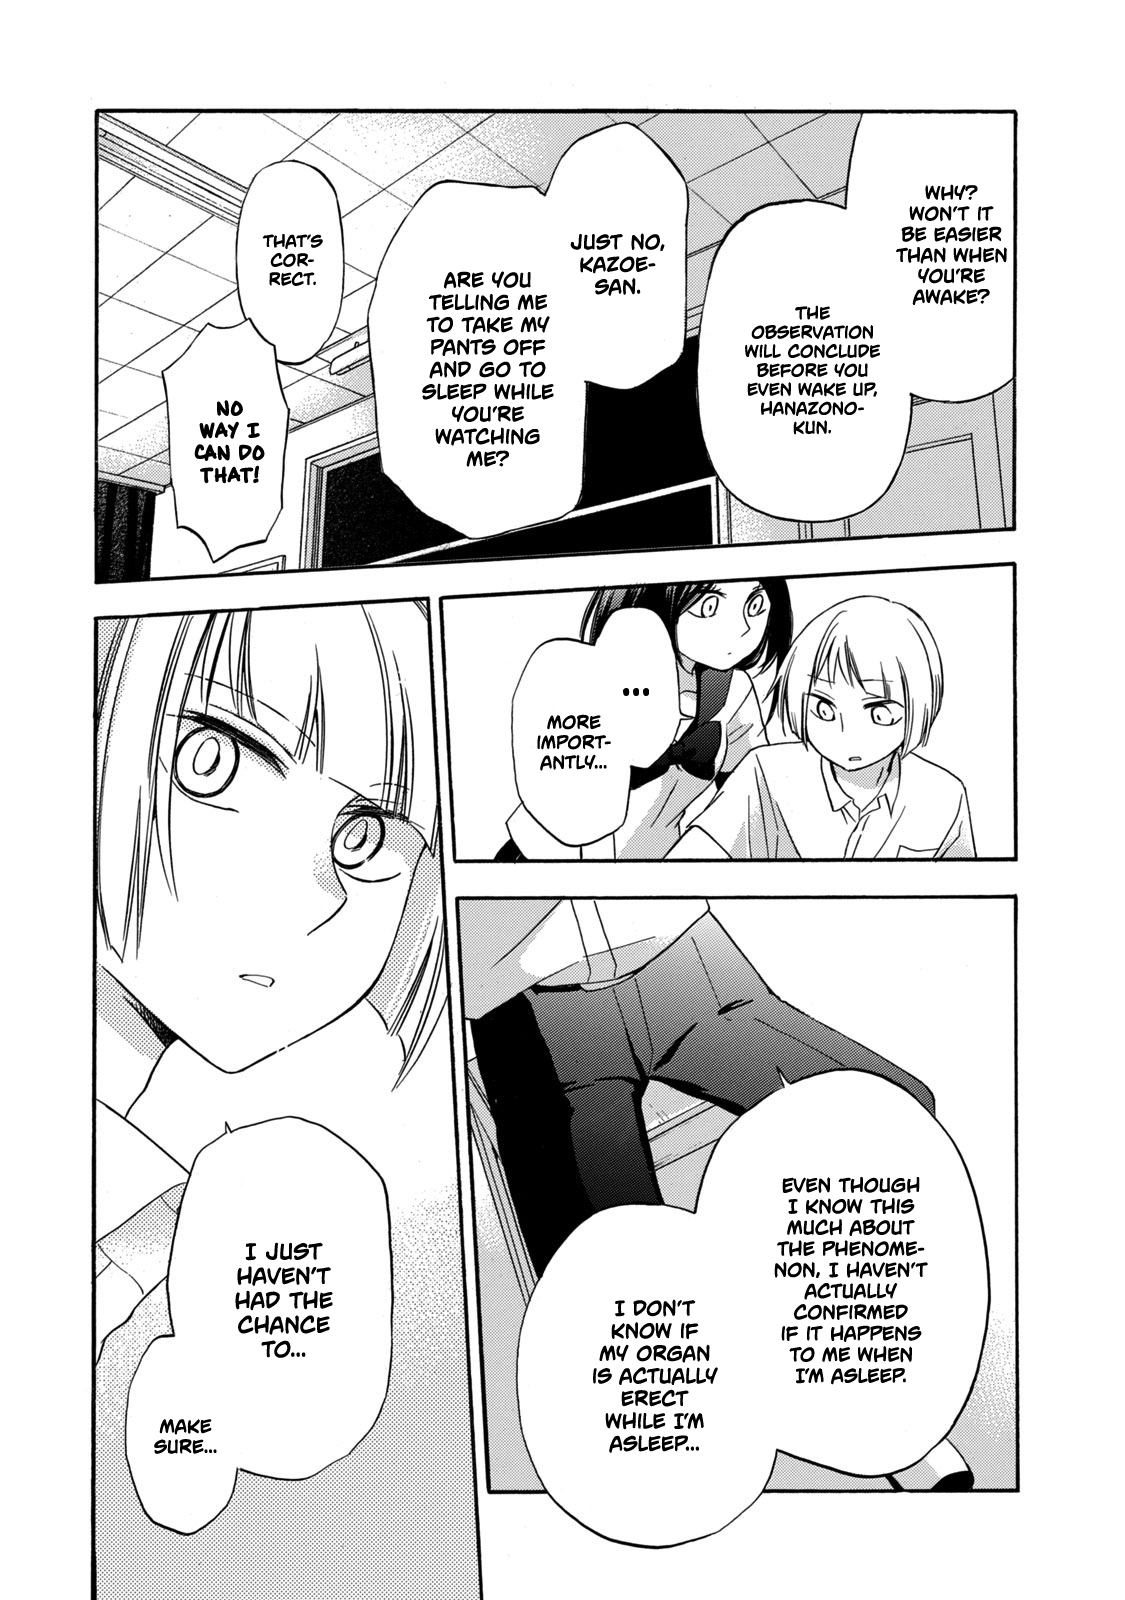 Hanazono and Kazoe's Bizarre After School Rendezvous Vol. 2 Ch. 12 An Inexplicable Phenomenon